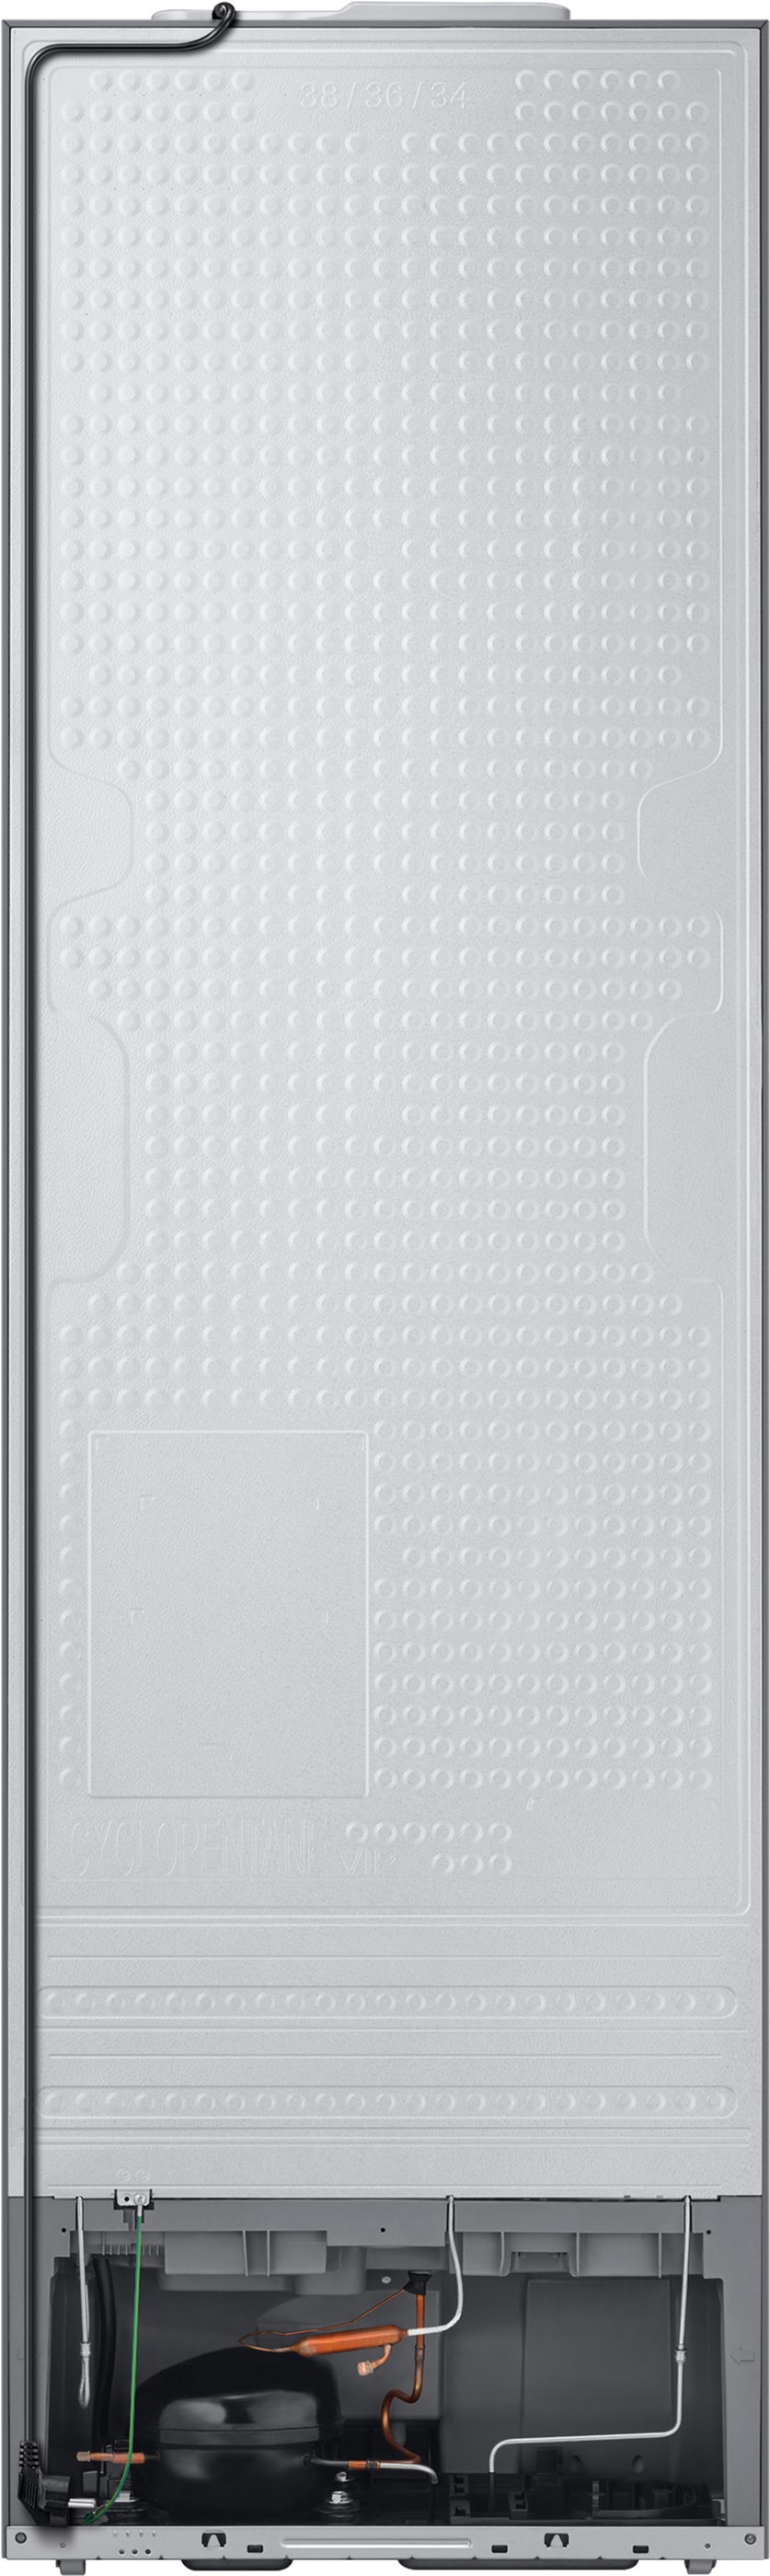 Холодильник Samsung RB38C603EEL/UA отзывы - изображения 5